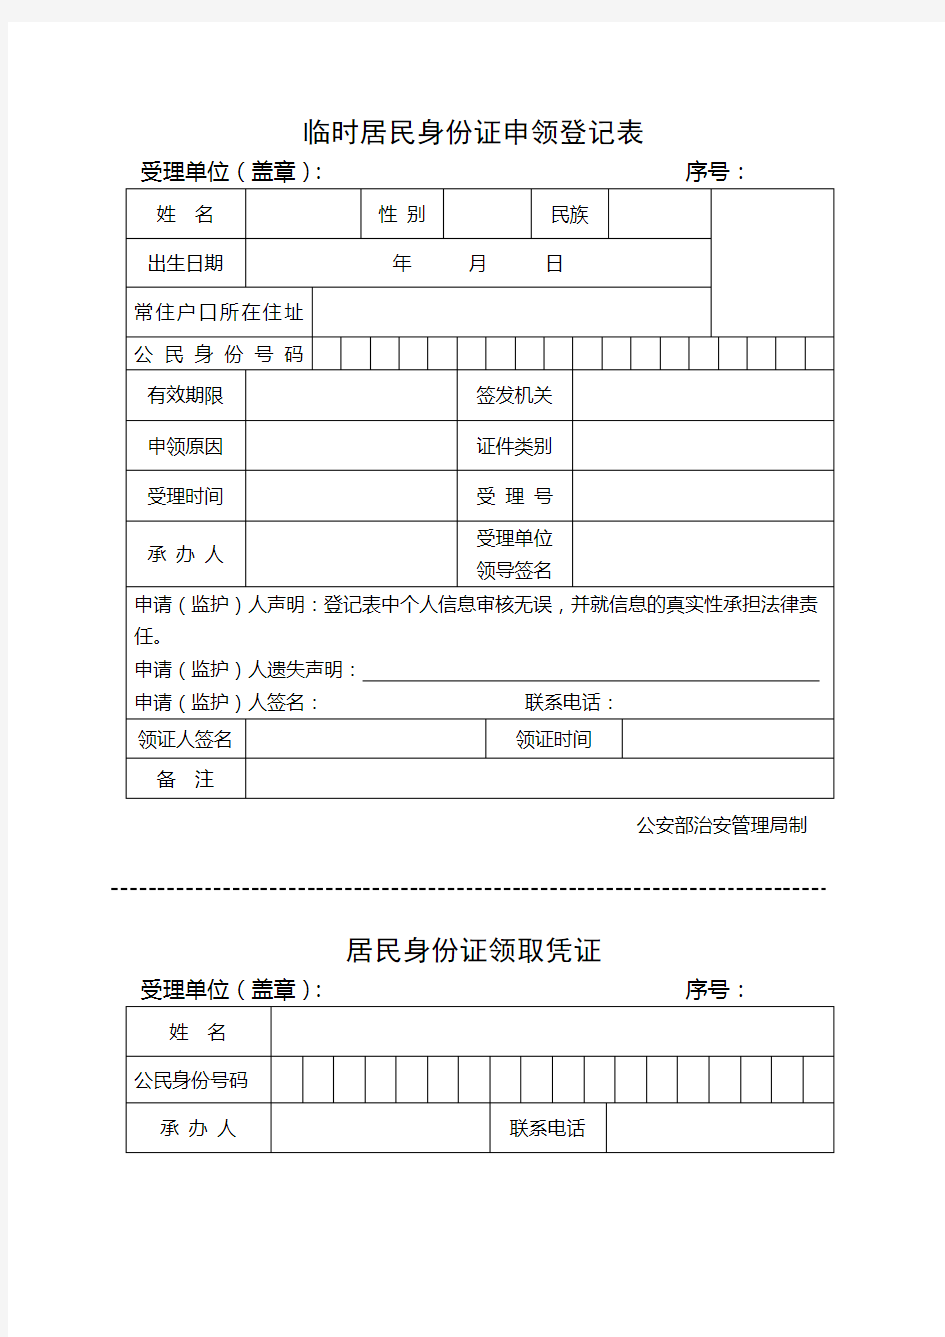 临时居民身份证申领登记表